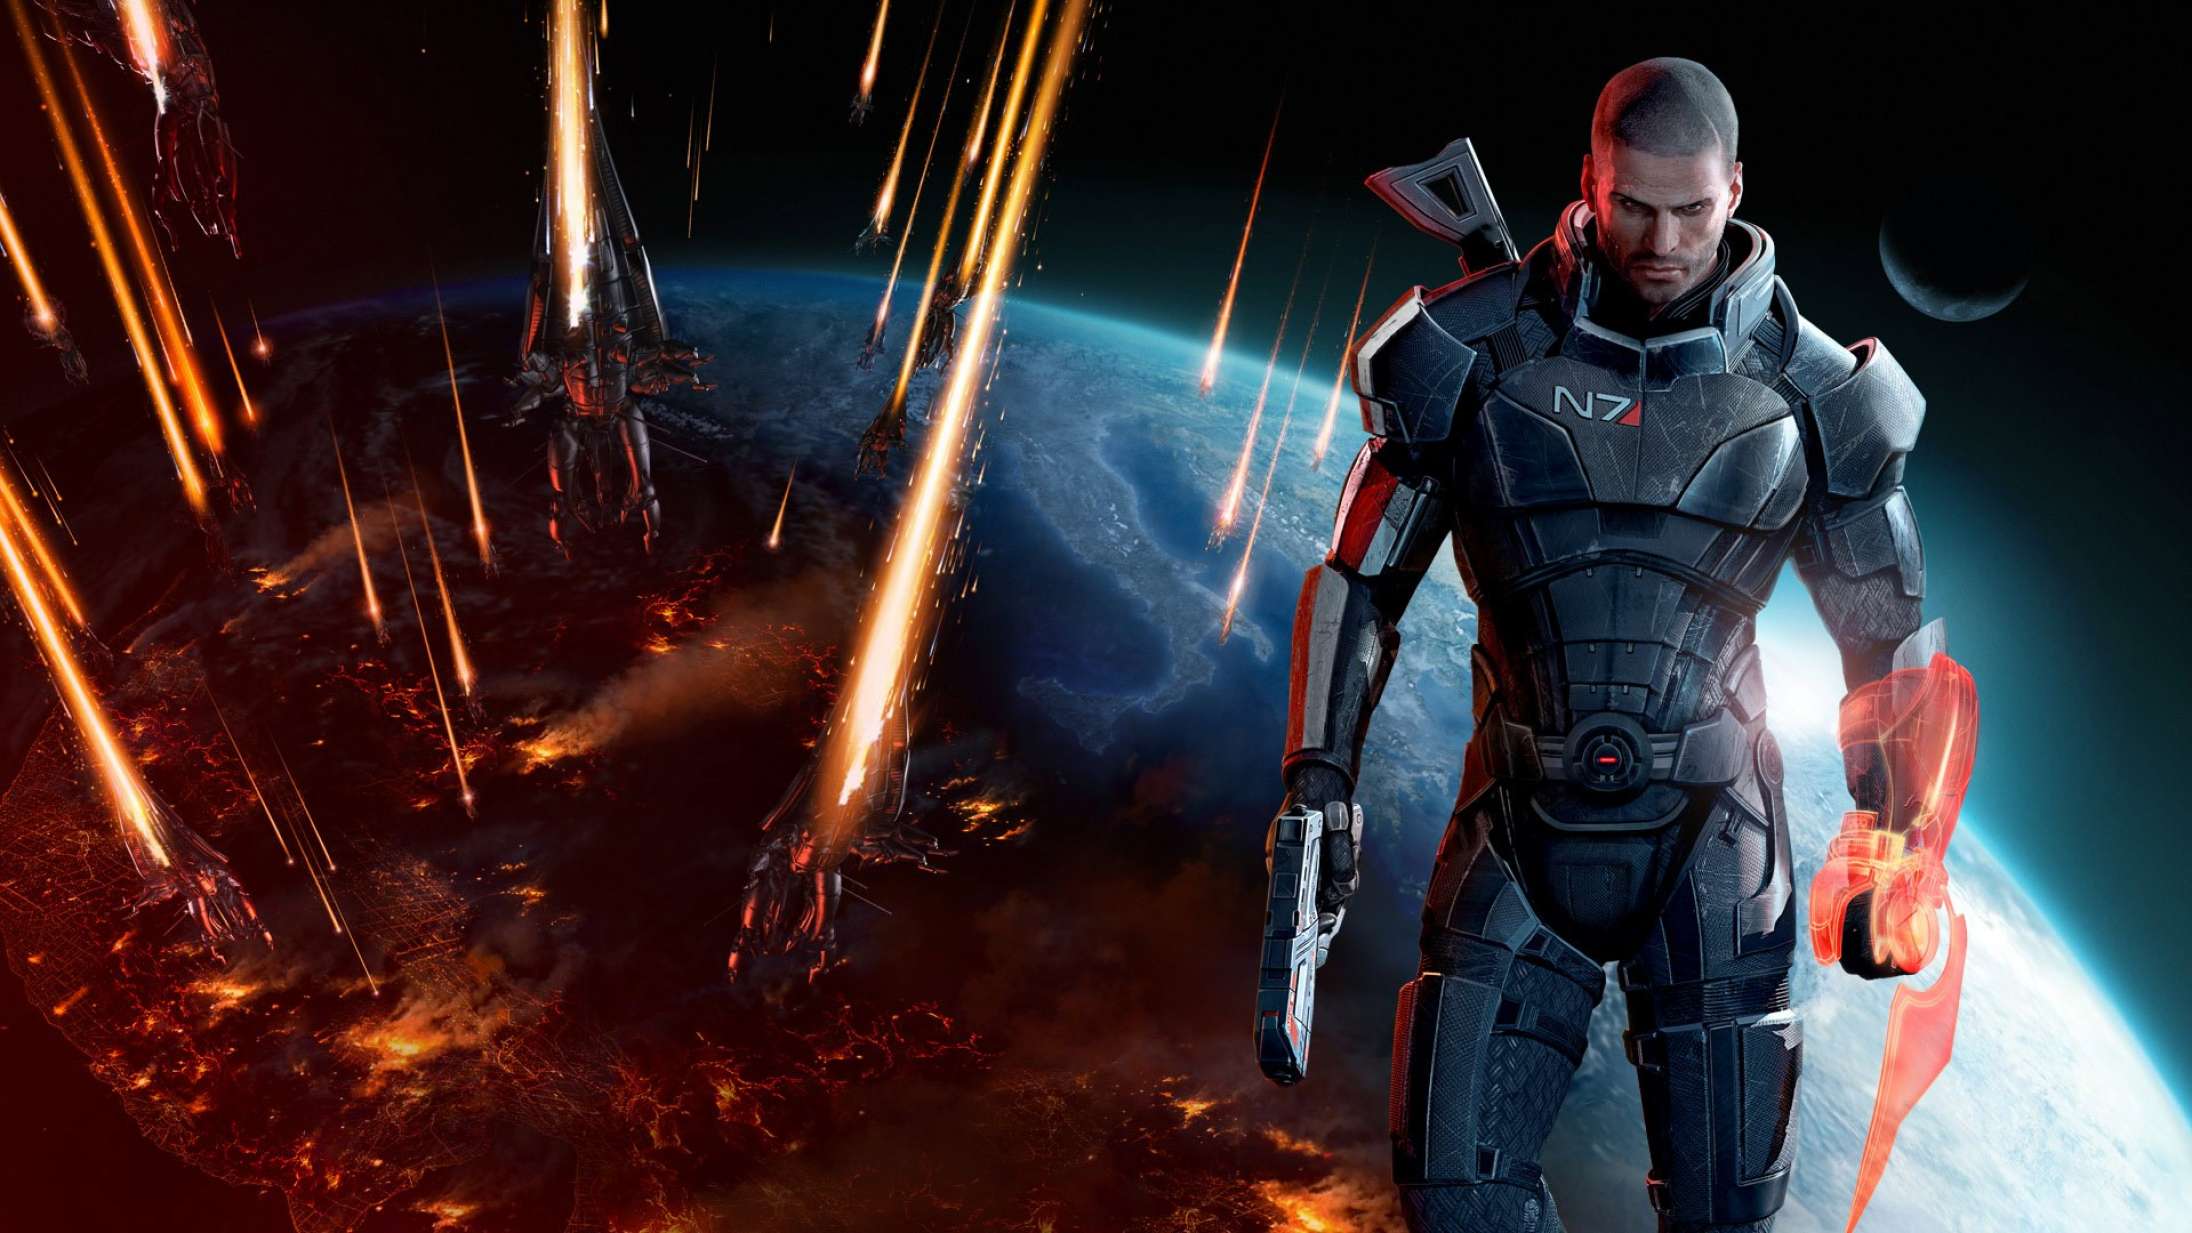 Fra panseksuel til heteroseksuel: Fox News fik konsekvenser for romantikken i ‘Mass Effect 2’